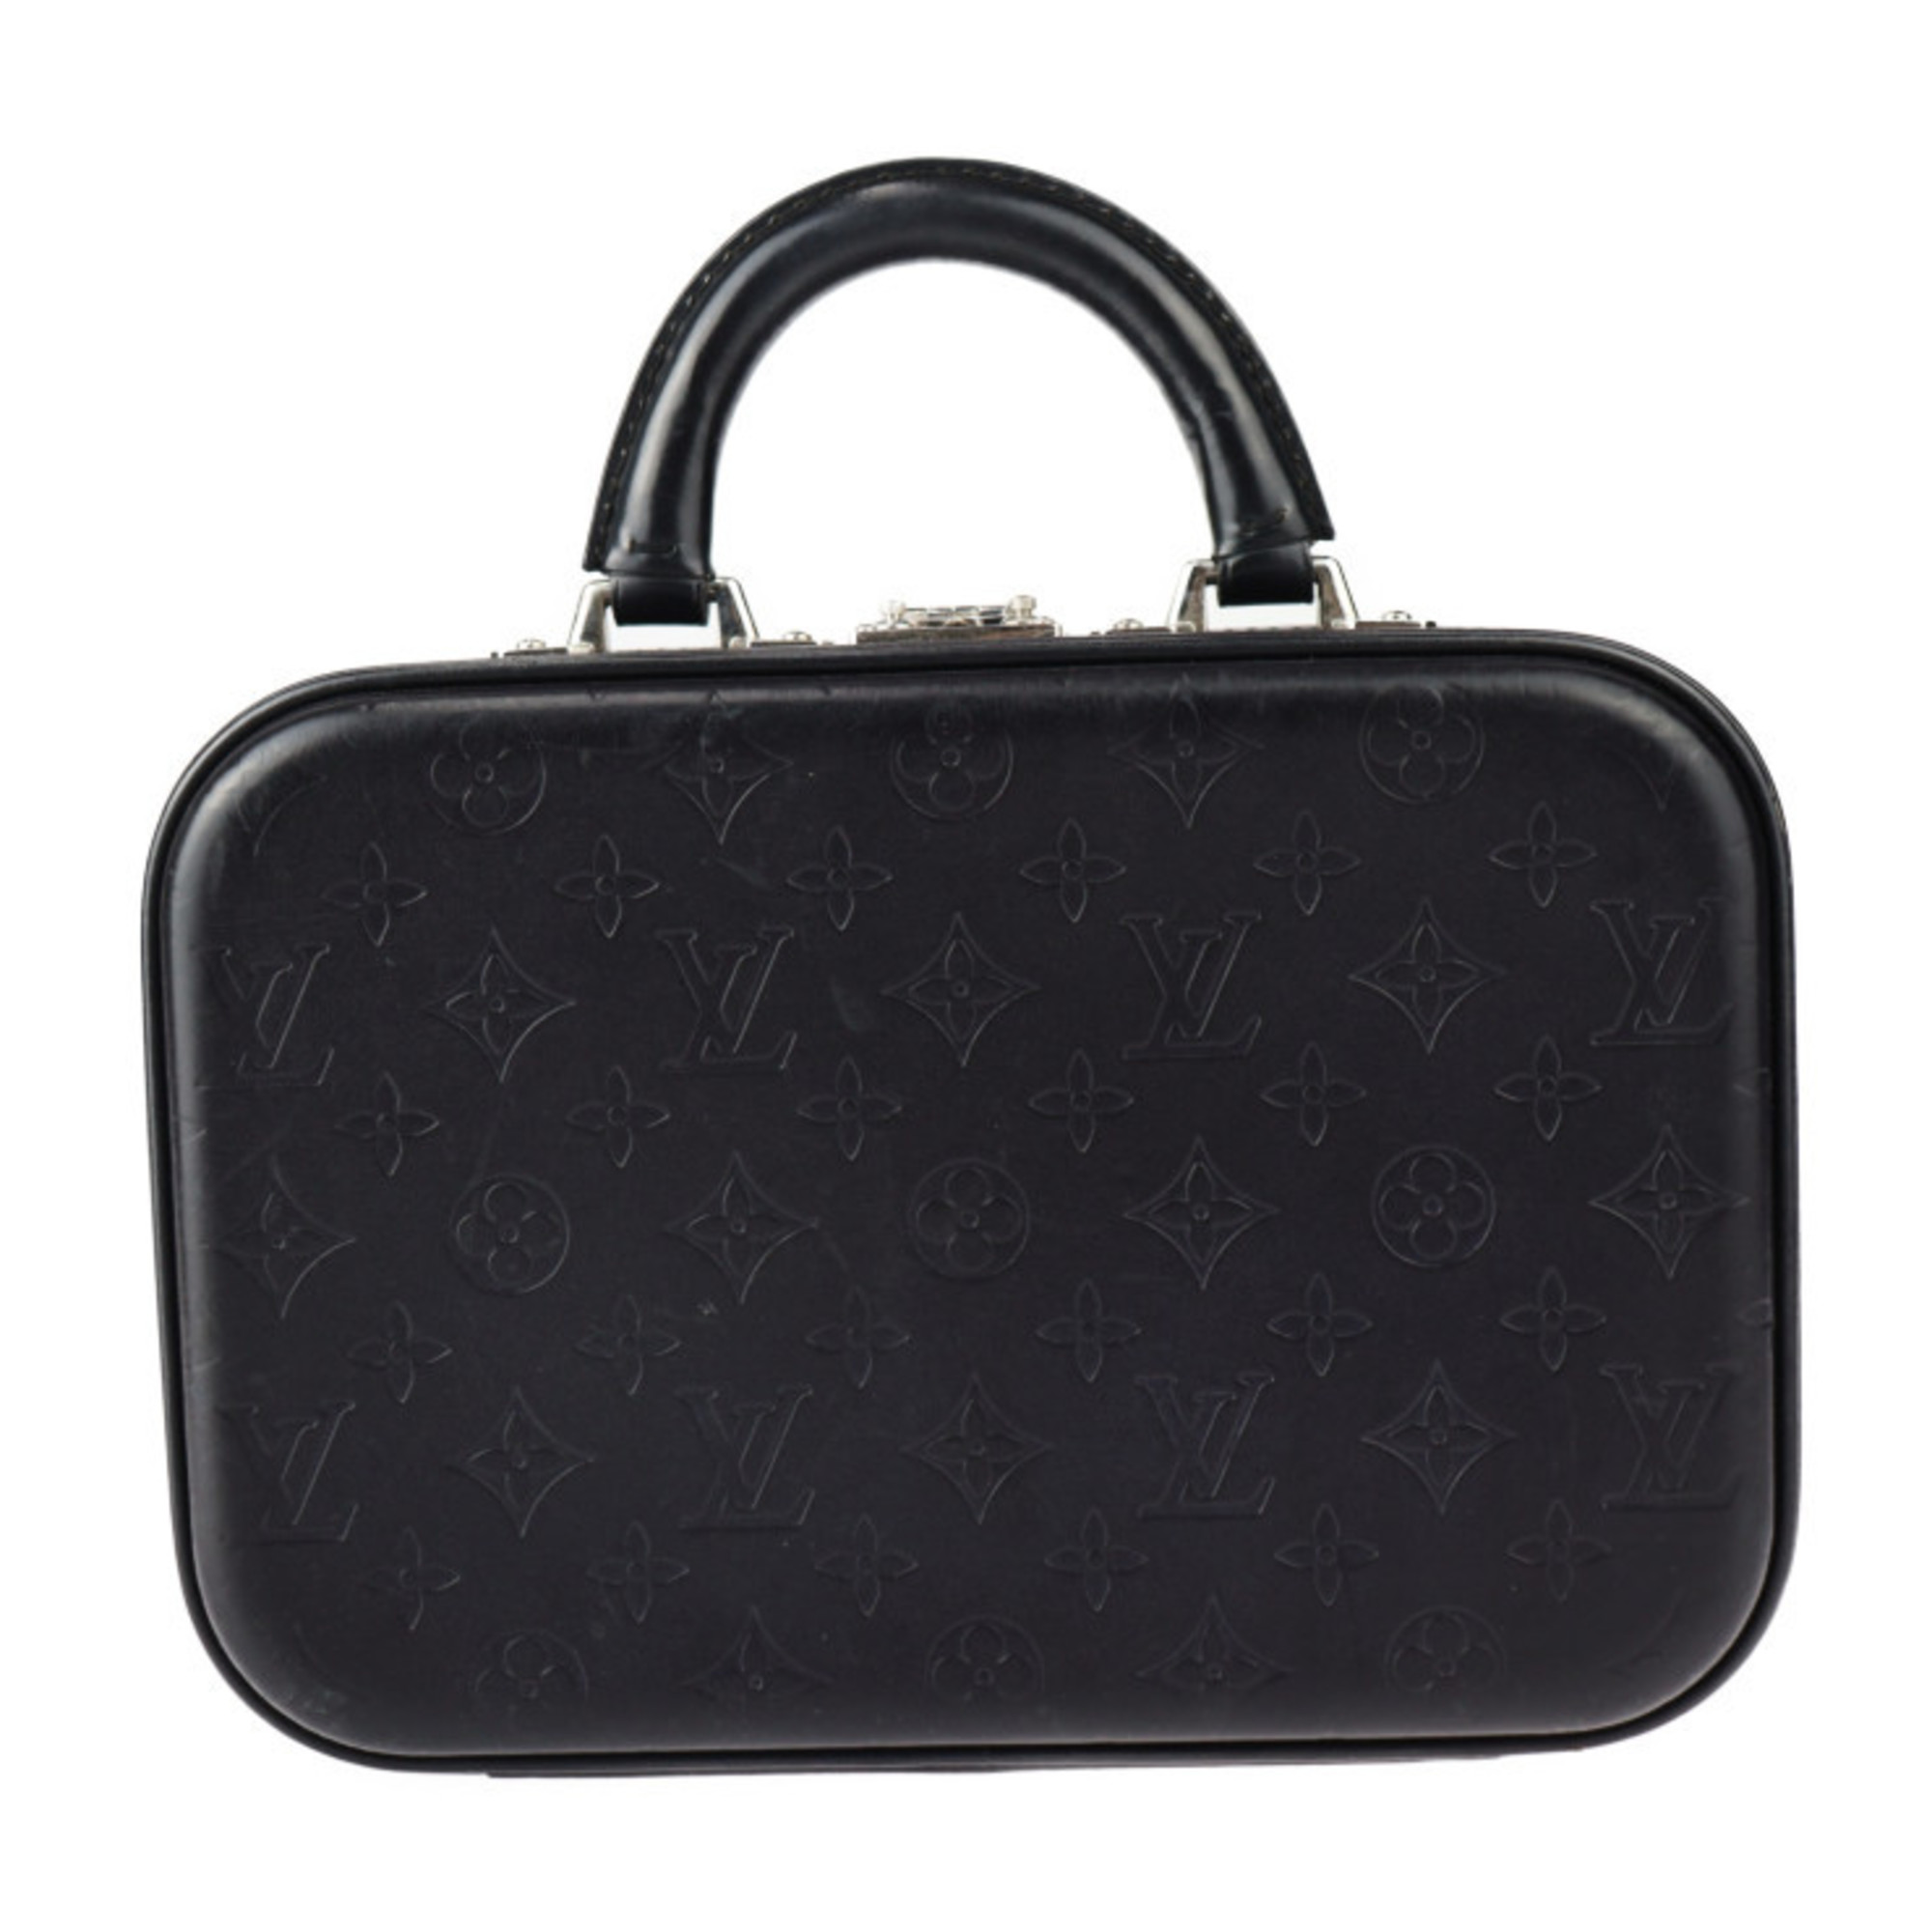 LOUIS VUITTON Louis Vuitton Valiset PM Handbag M92235 Monogram Glace Leather Black Trunk